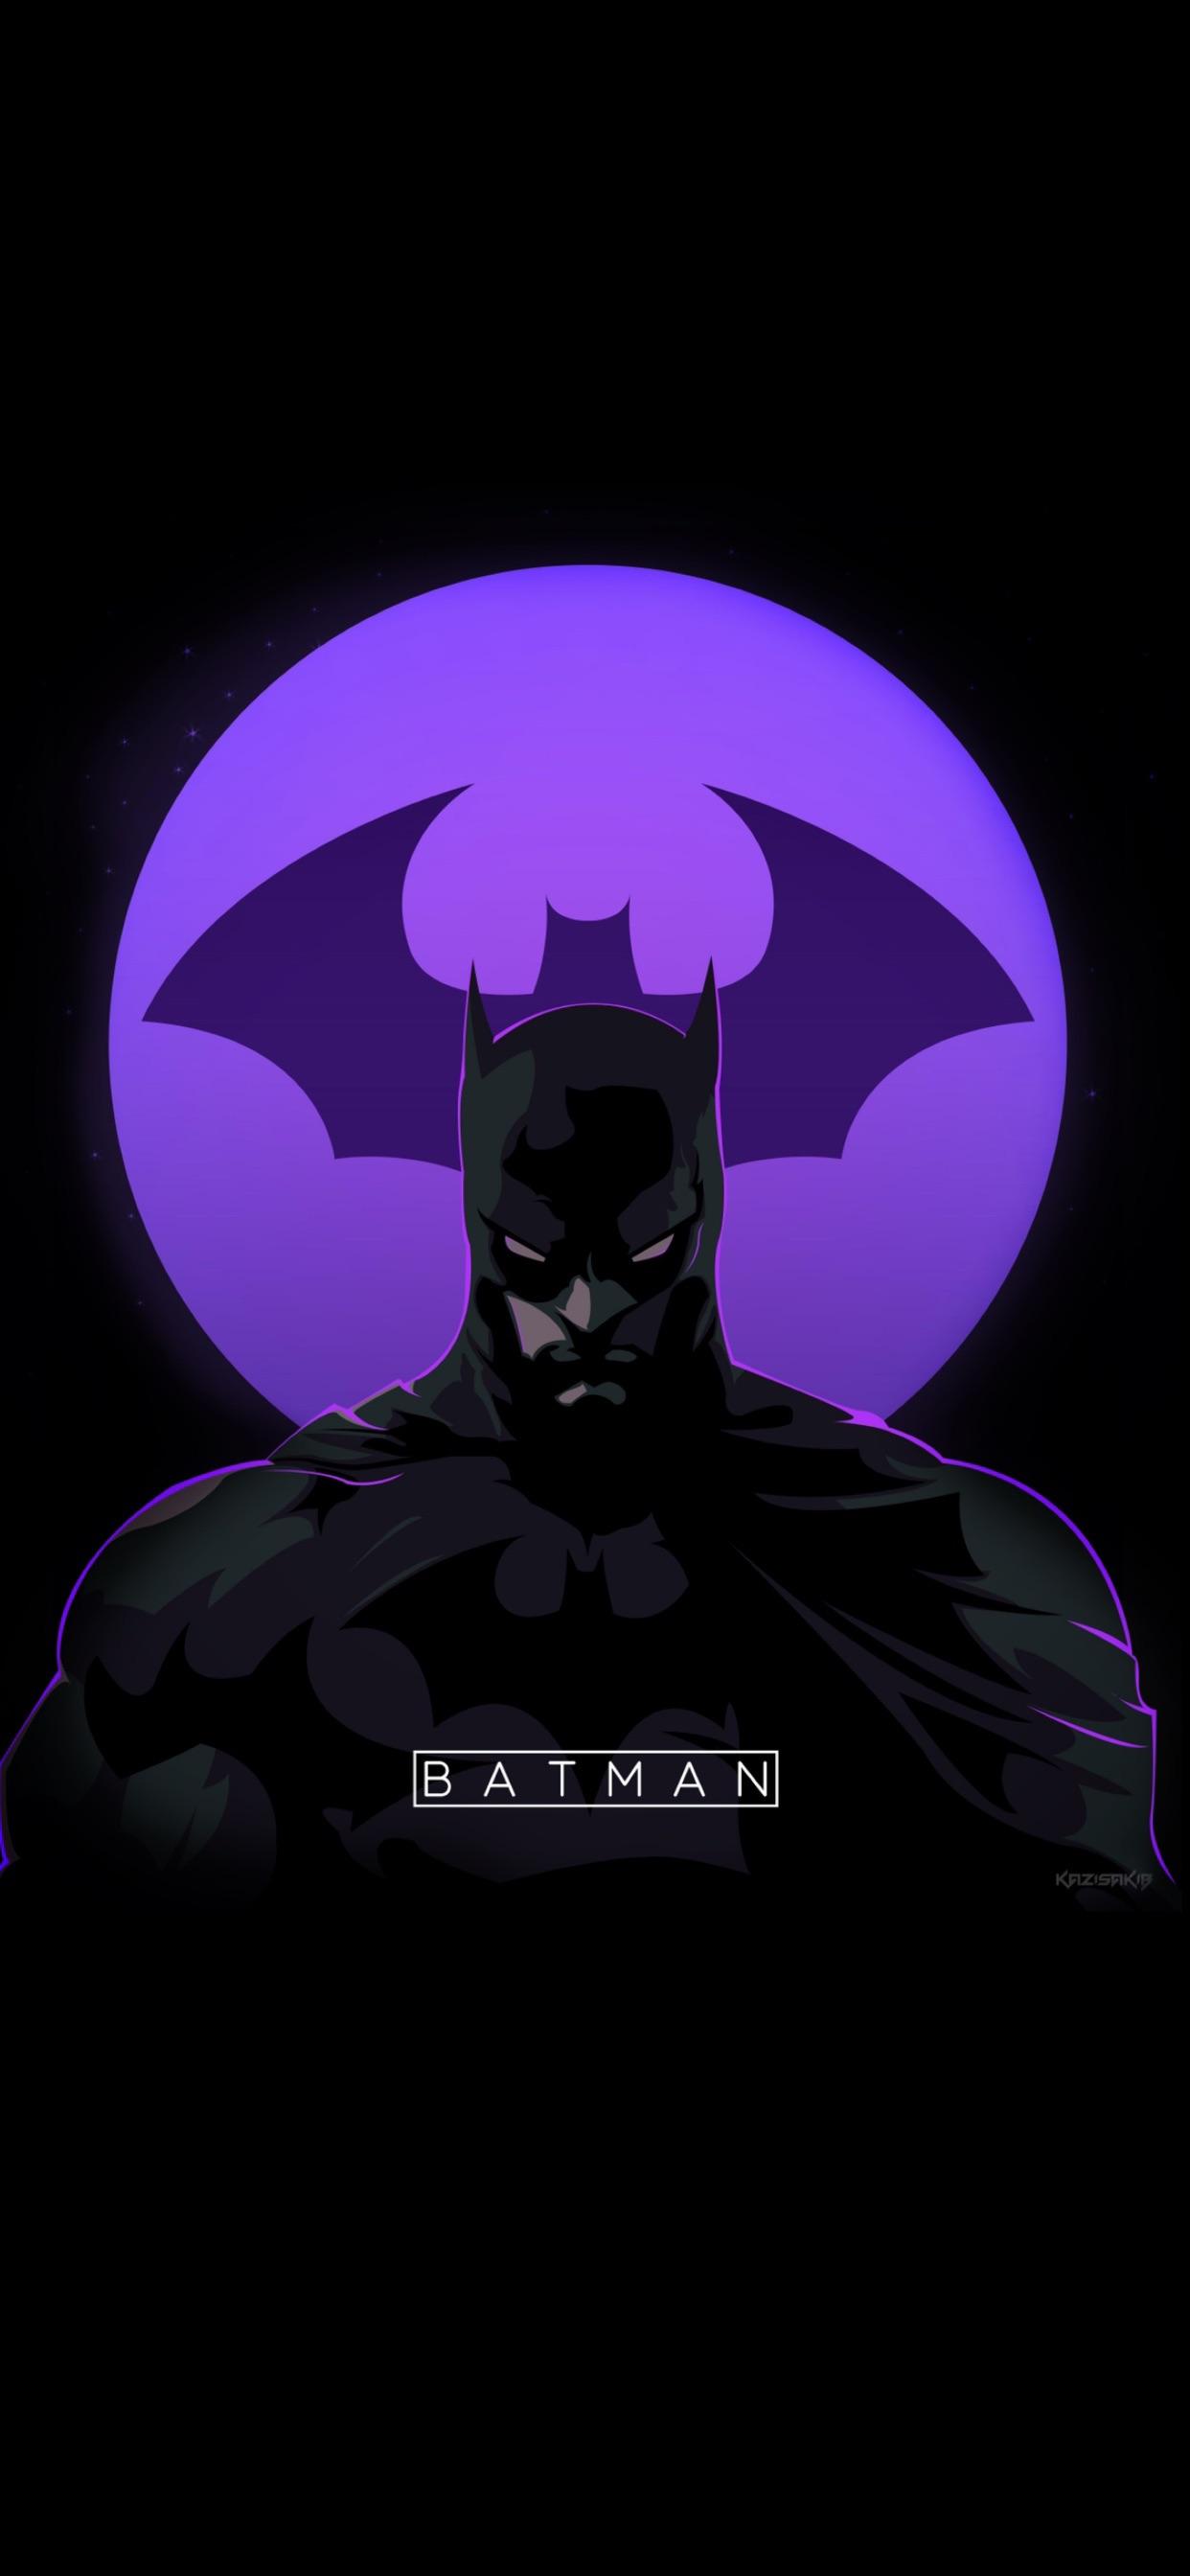 Batman by kzsakib (19:9). iPhone X Wallpaper X